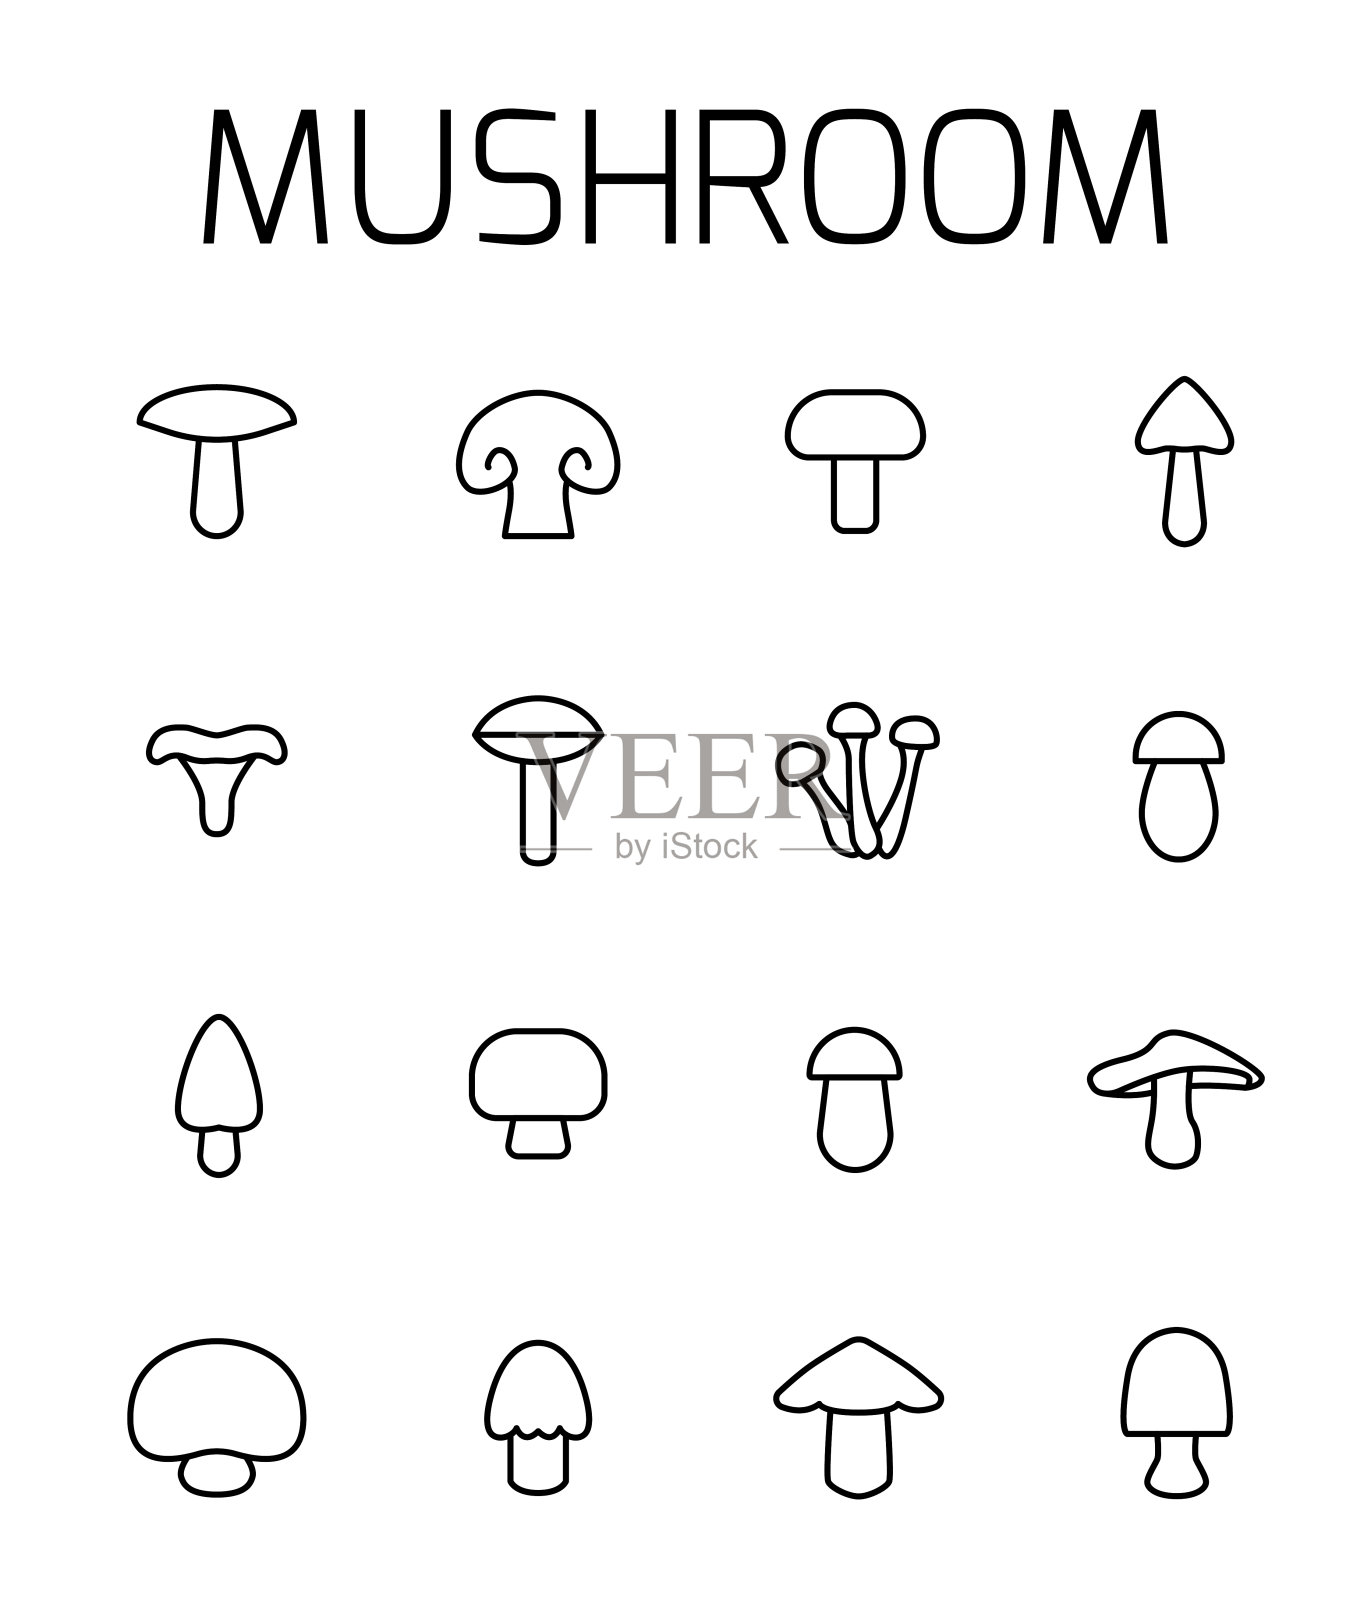 蘑菇相关矢量图标集。图标素材